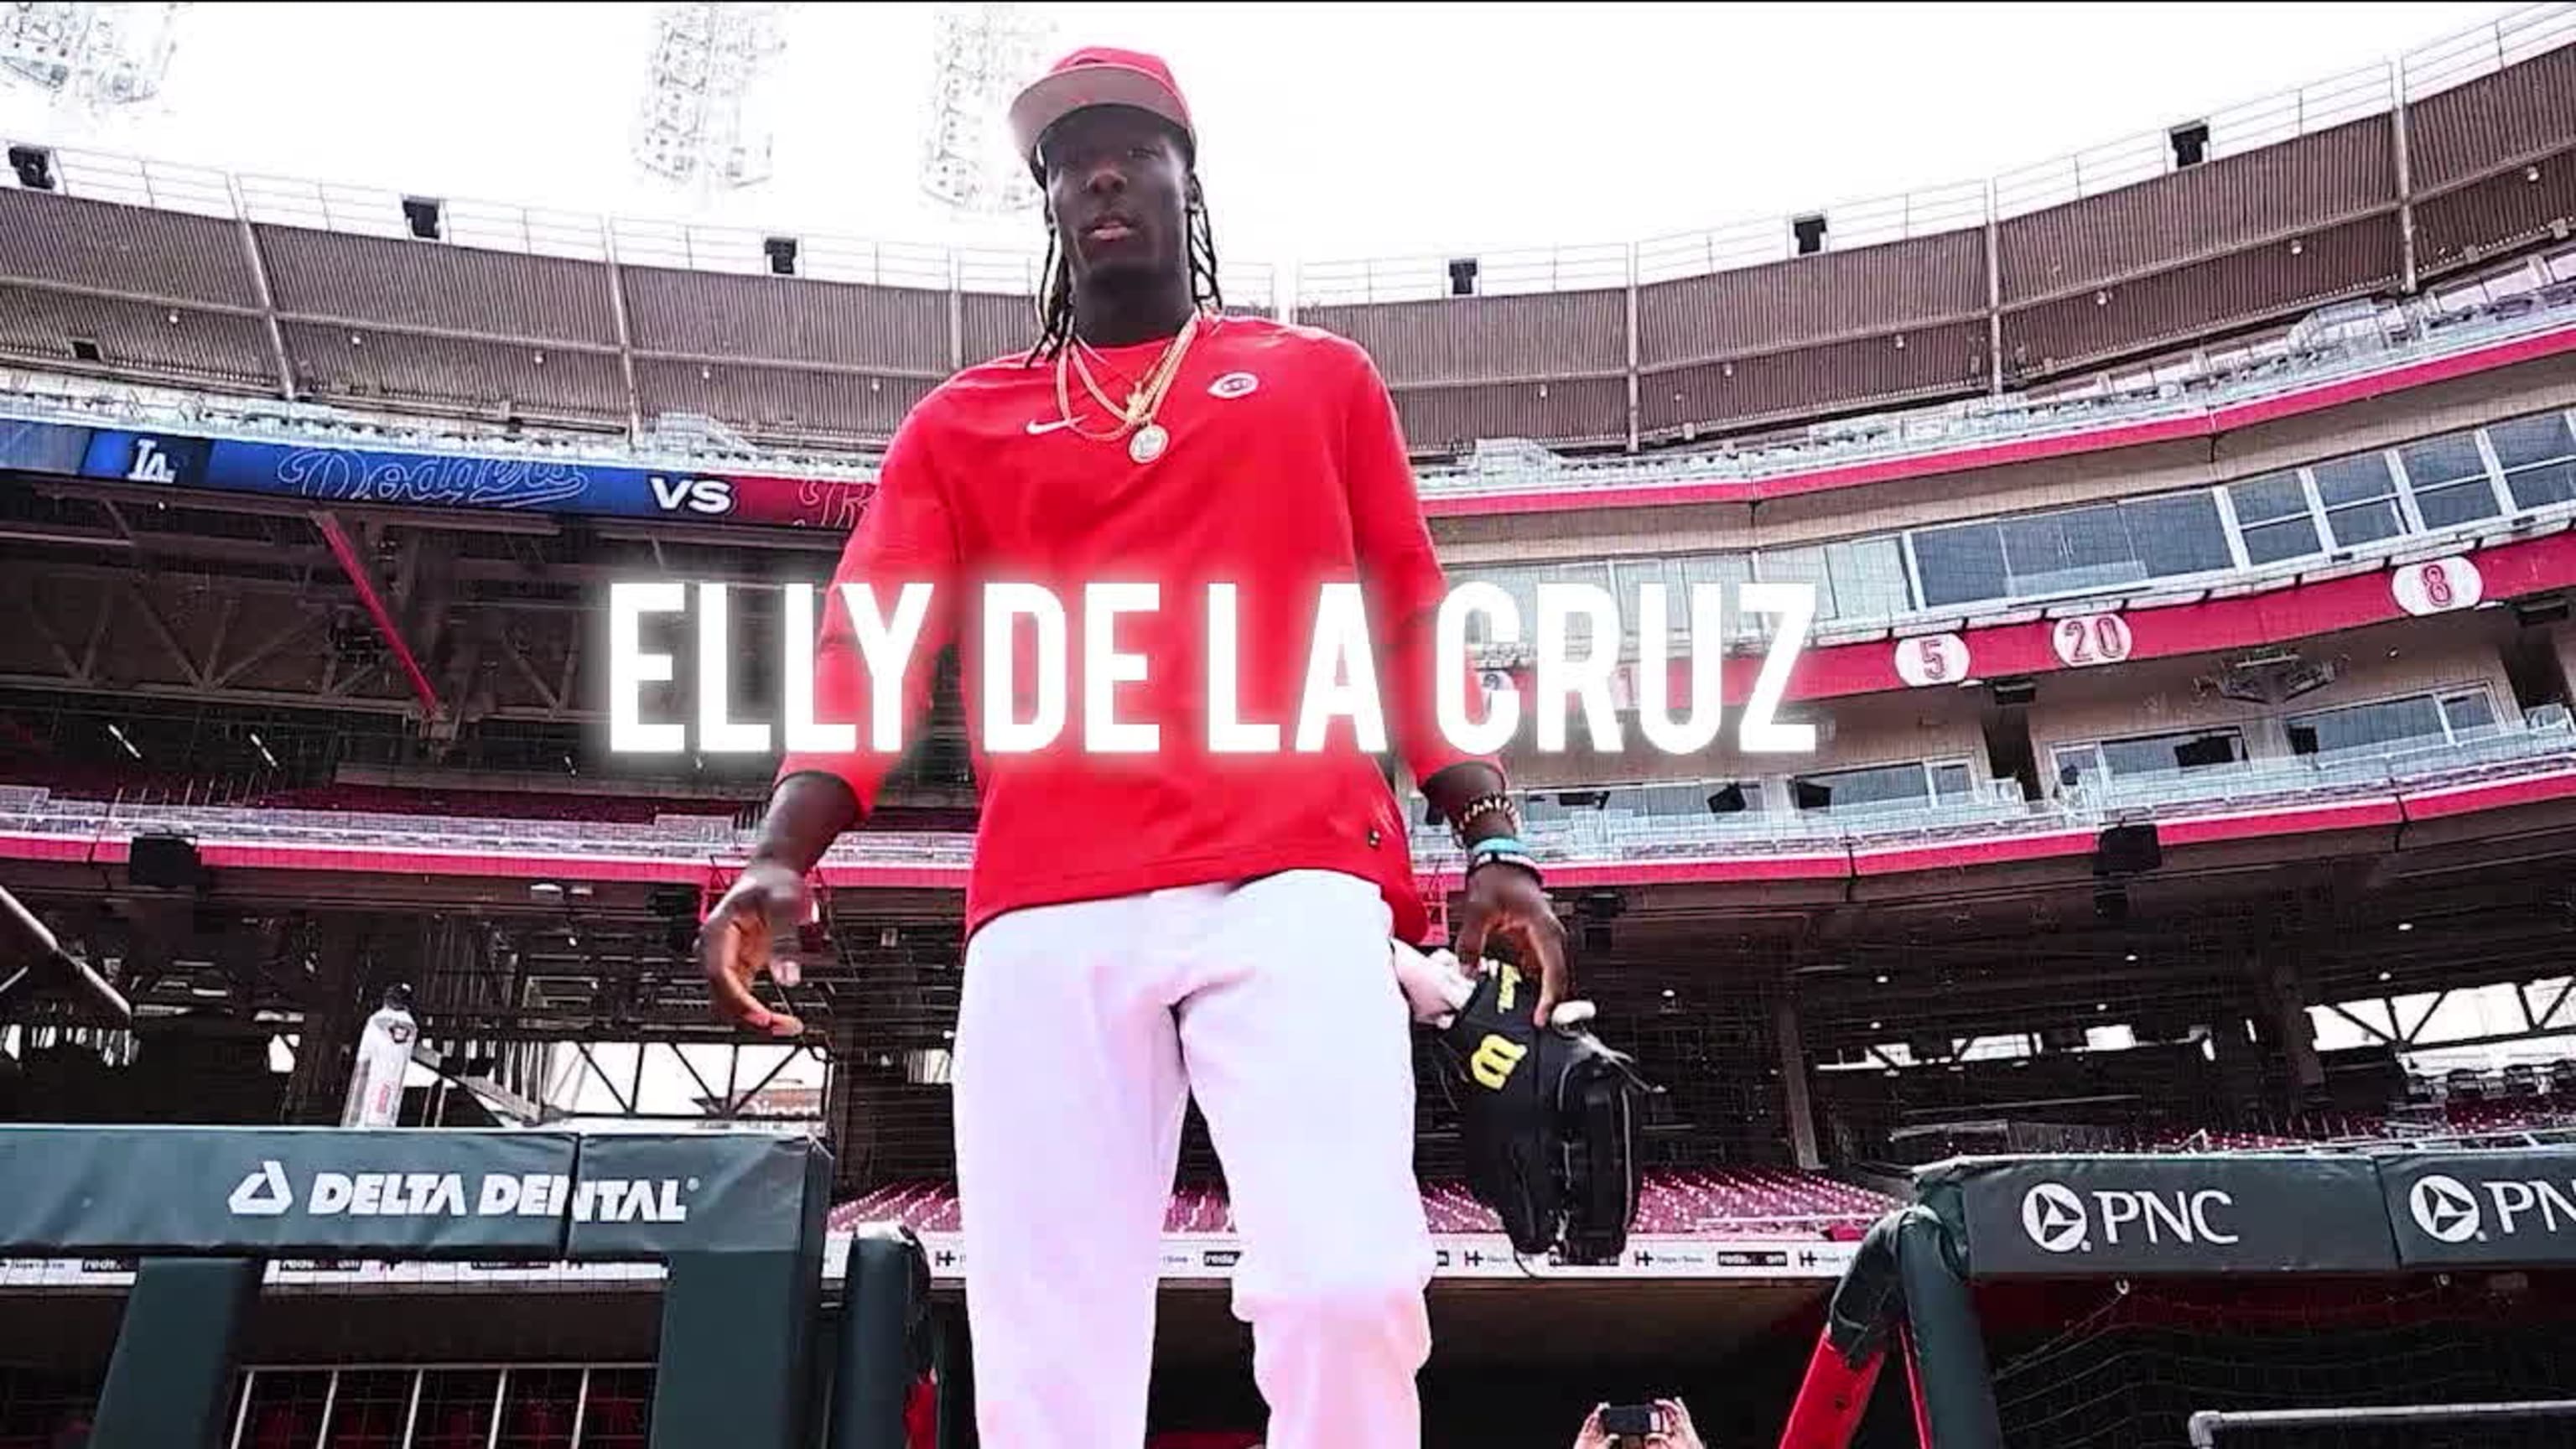 Who is Elly De La Cruz? Cincinnati Reds player's age and more